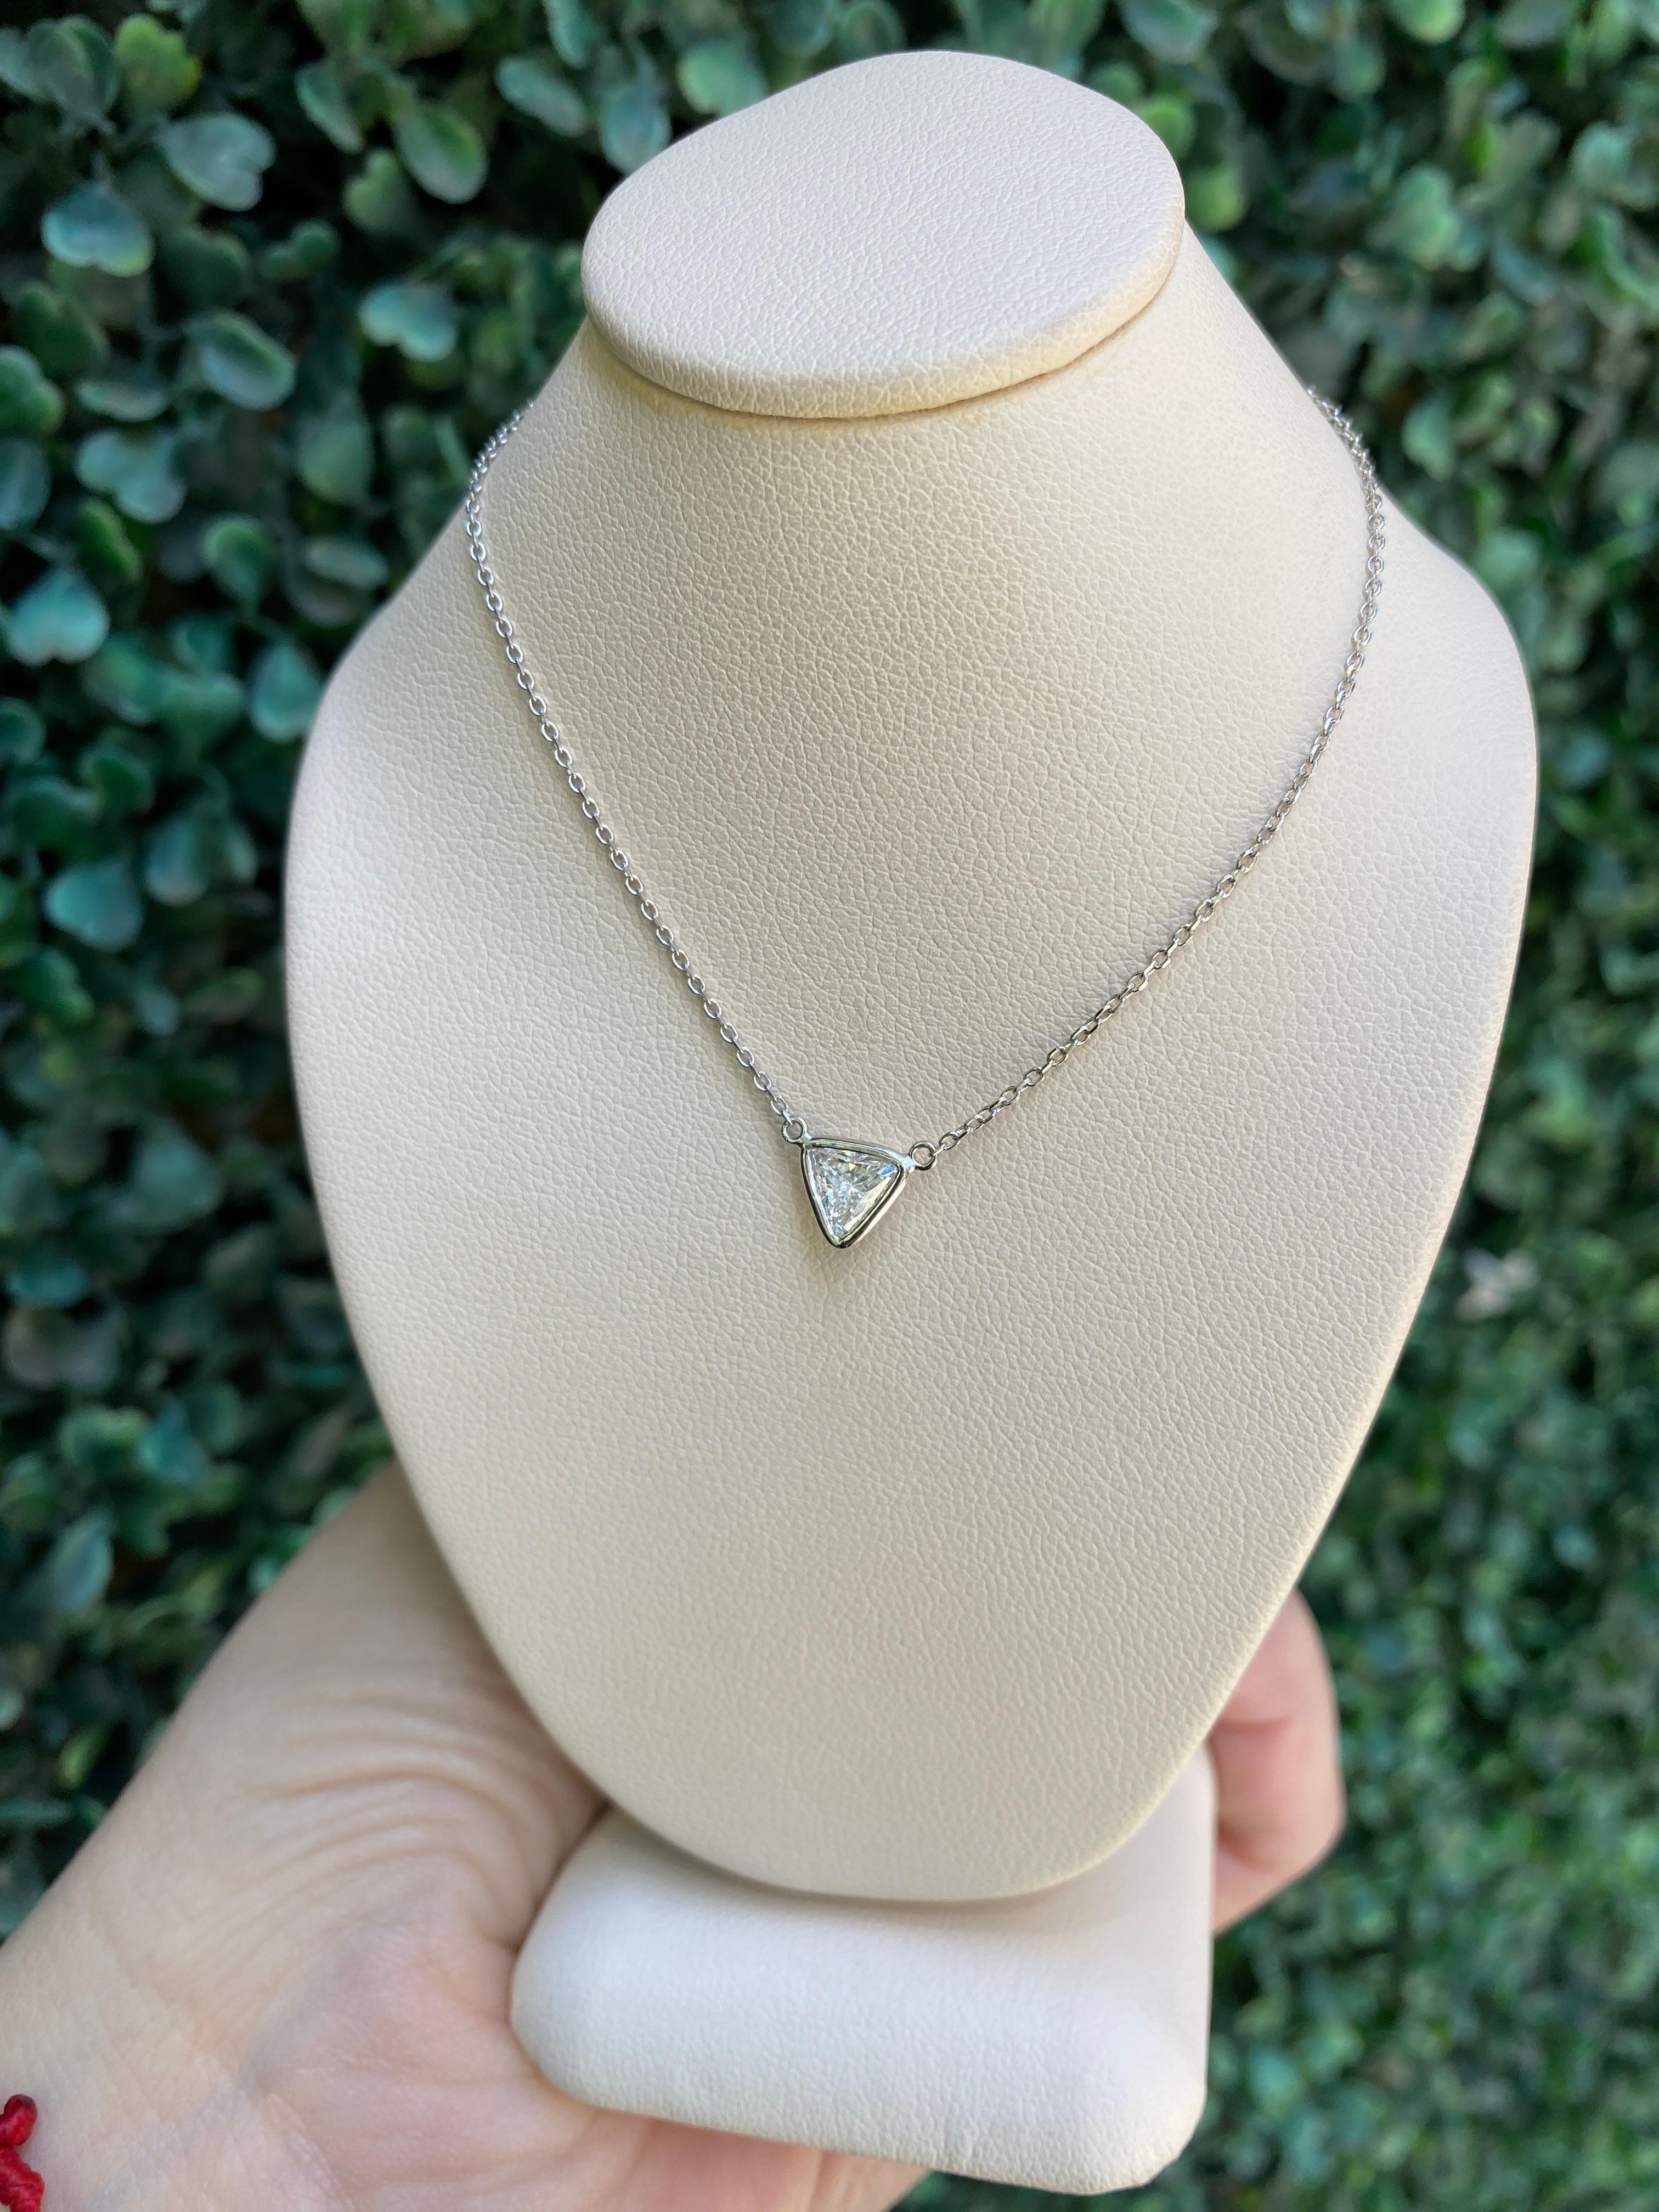 0.46 Carat Natural Trillion Cut Diamond Pendant Necklace, 14k White Gold For Sale 4